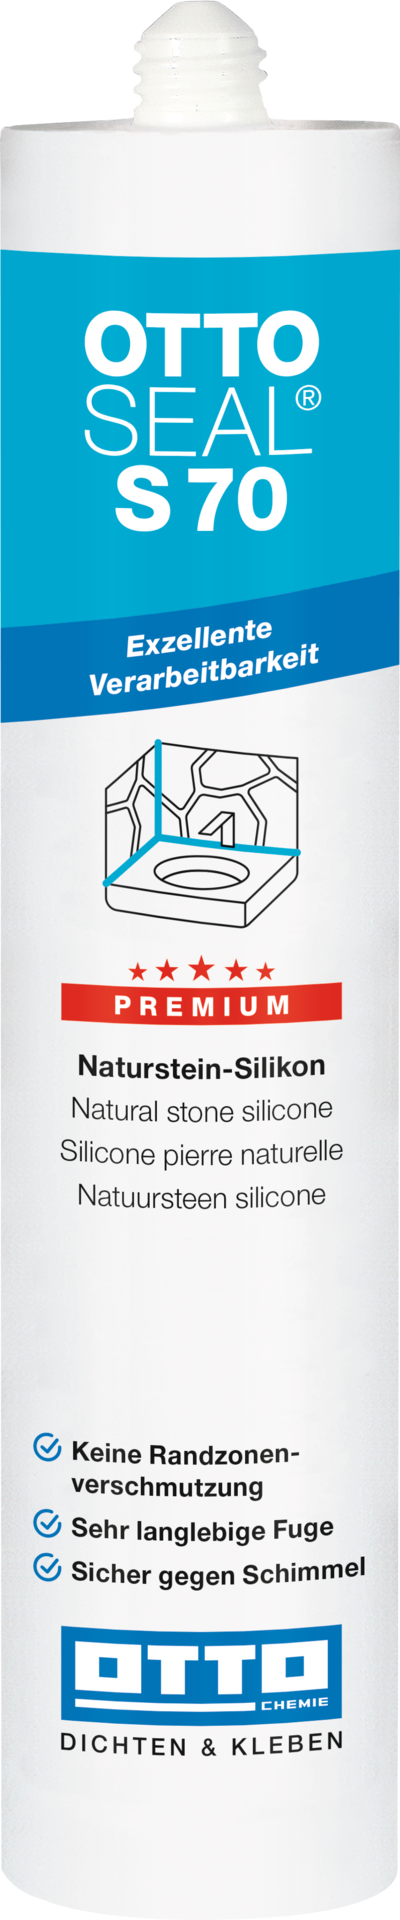 OTTOSEAL® S70 Das Premium-Naturstein-Silicon 310 ml